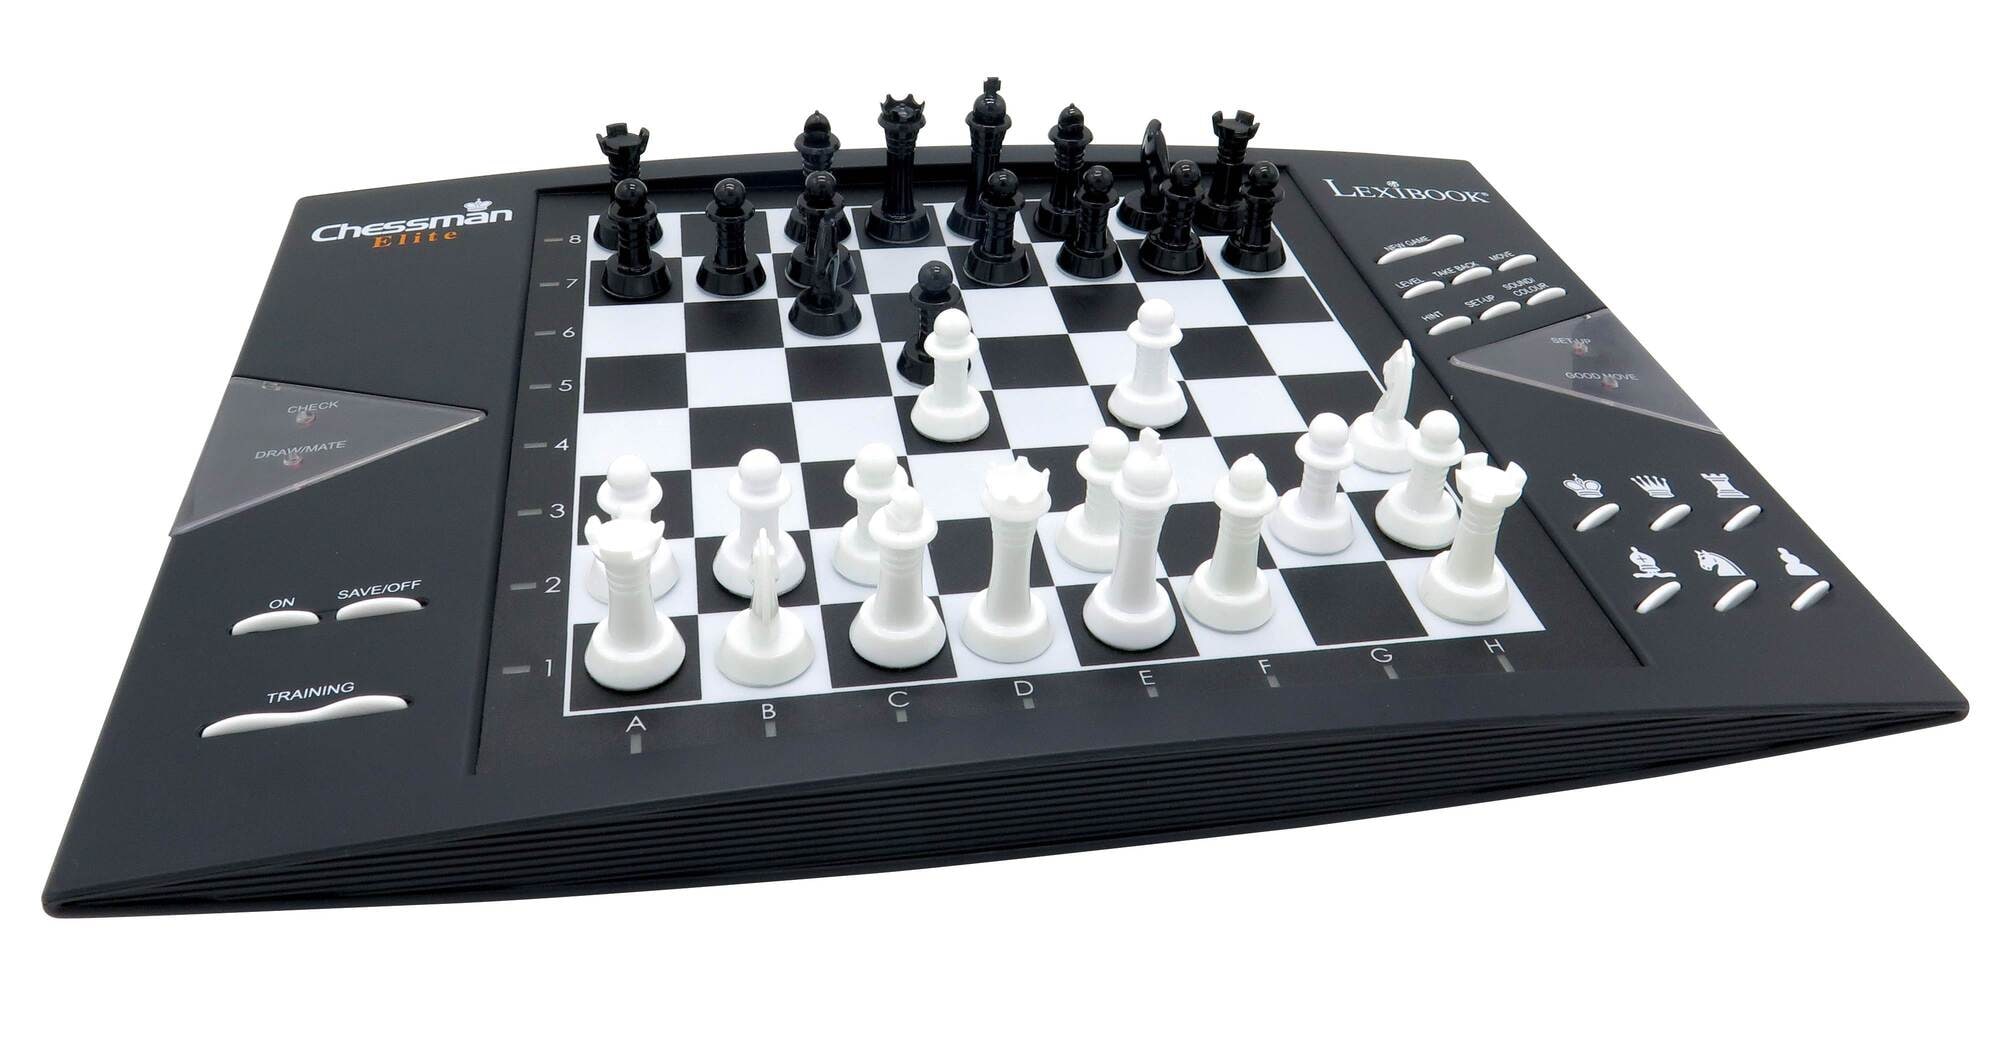 ChessMan Elite, et elektronisk sjakkspill - Elkjøp